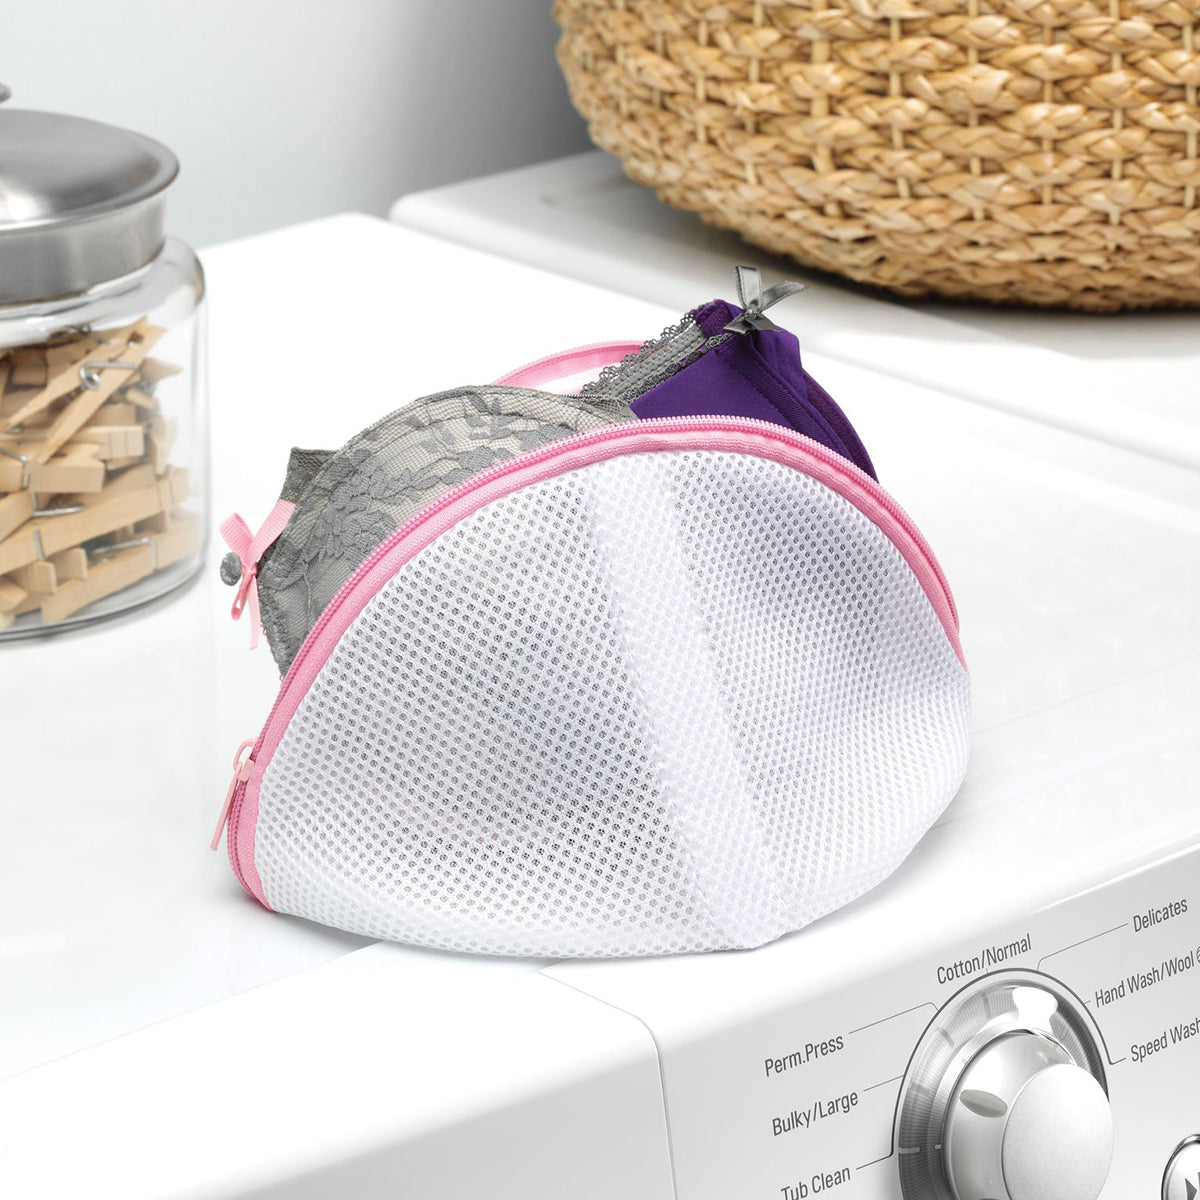 Linen Mesh Laundry Bag for Socks, Bra or Delicates. Lightweight